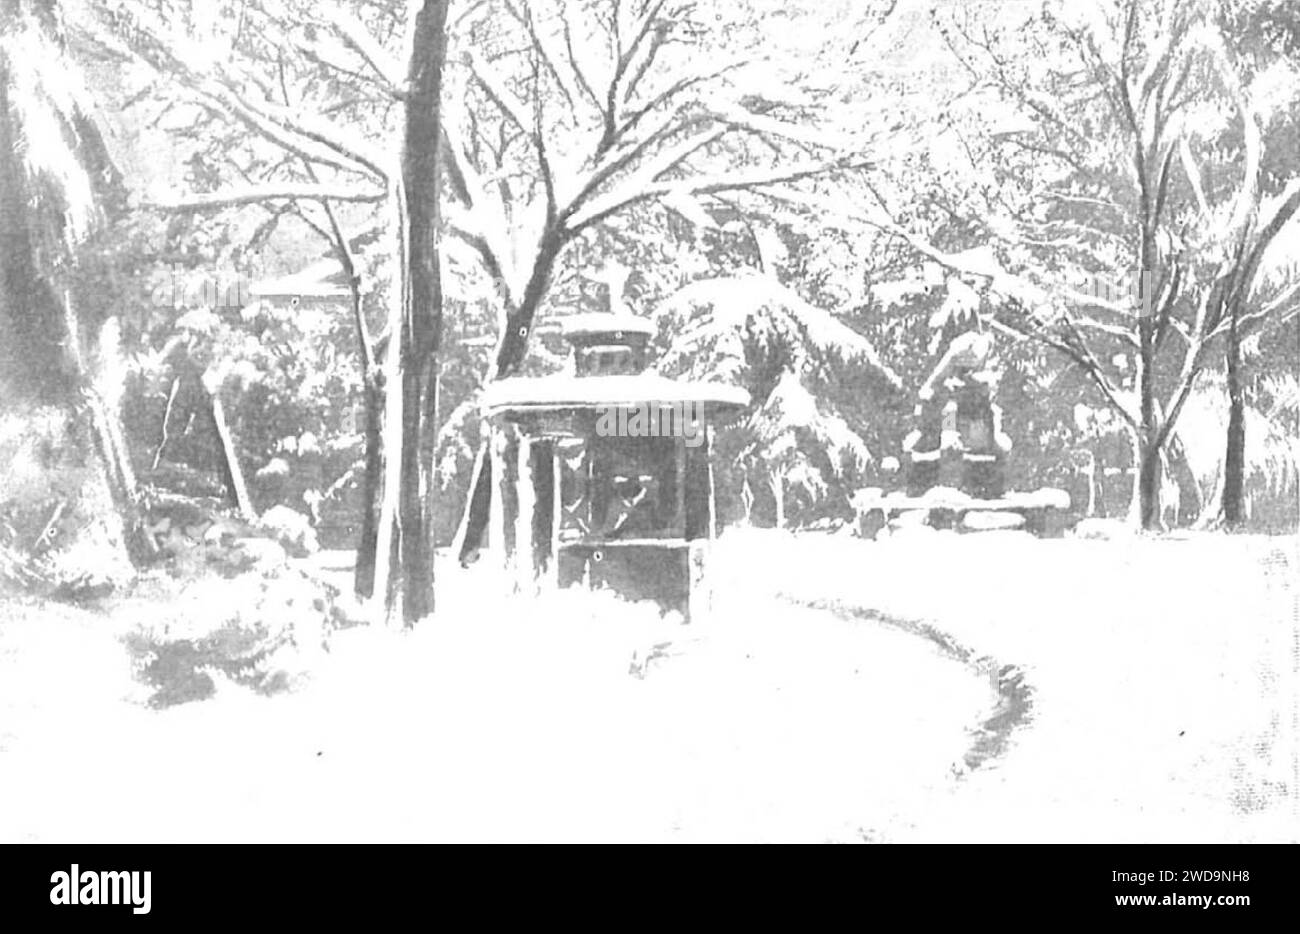 1904-12-08, Nuevo Mundo, El invierno en Madrid, Campúa (cropped) Aspecto de la plaza de Santa Ana durante la nevada del día 2 del actual. Stock Photo